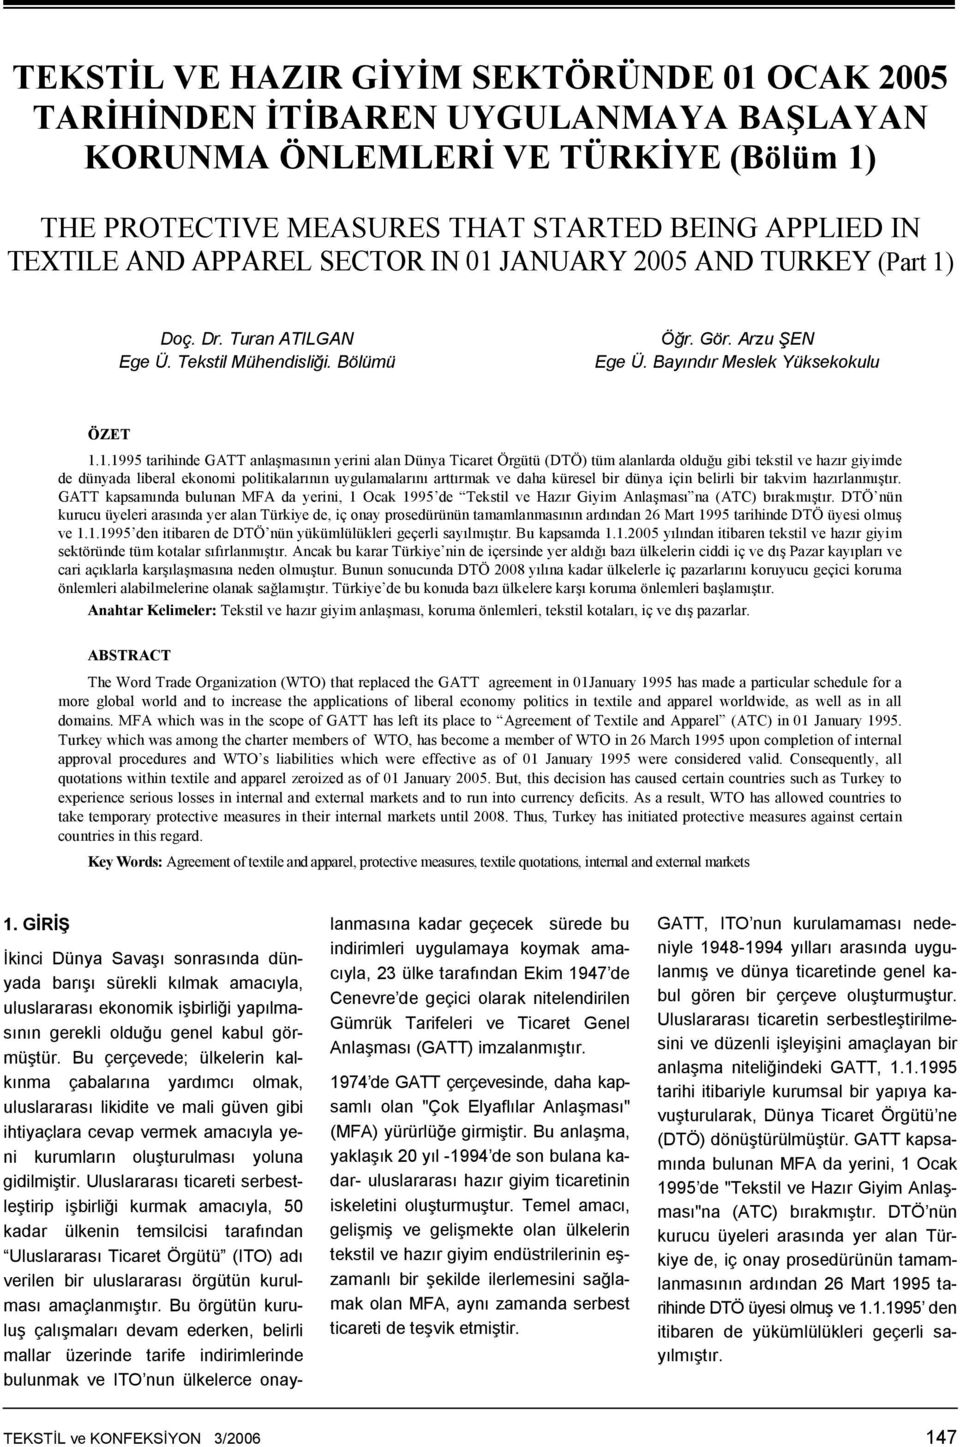 JANUARY 2005 AND TURKEY (Part 1)